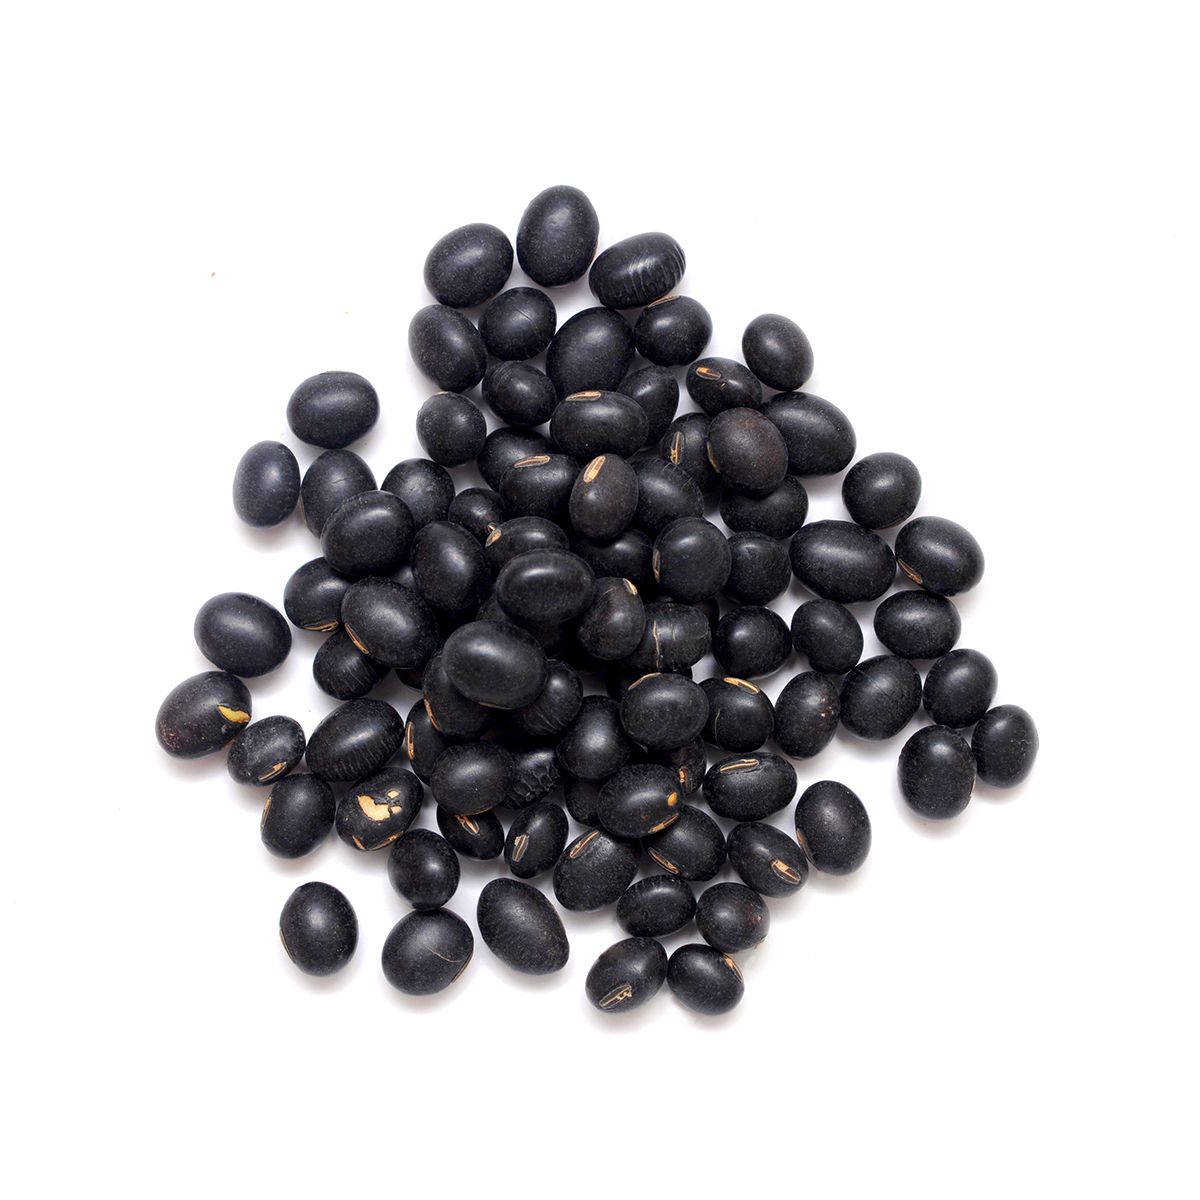 BoxNCase Black Beans